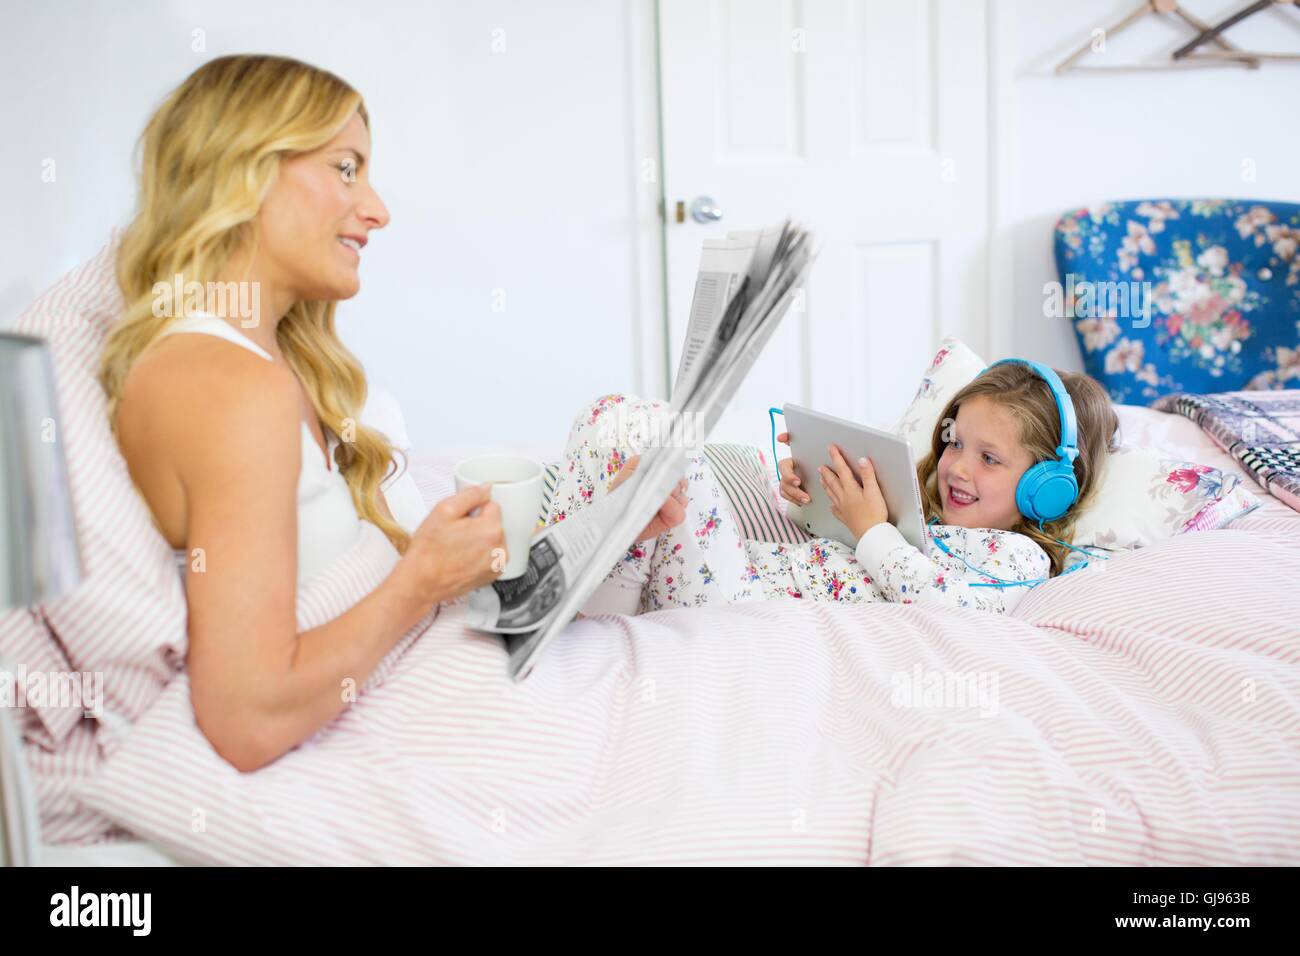 Parution de la propriété. Parution du modèle. Mère et fille au lit avec du papier journal et tablette numérique. Banque D'Images